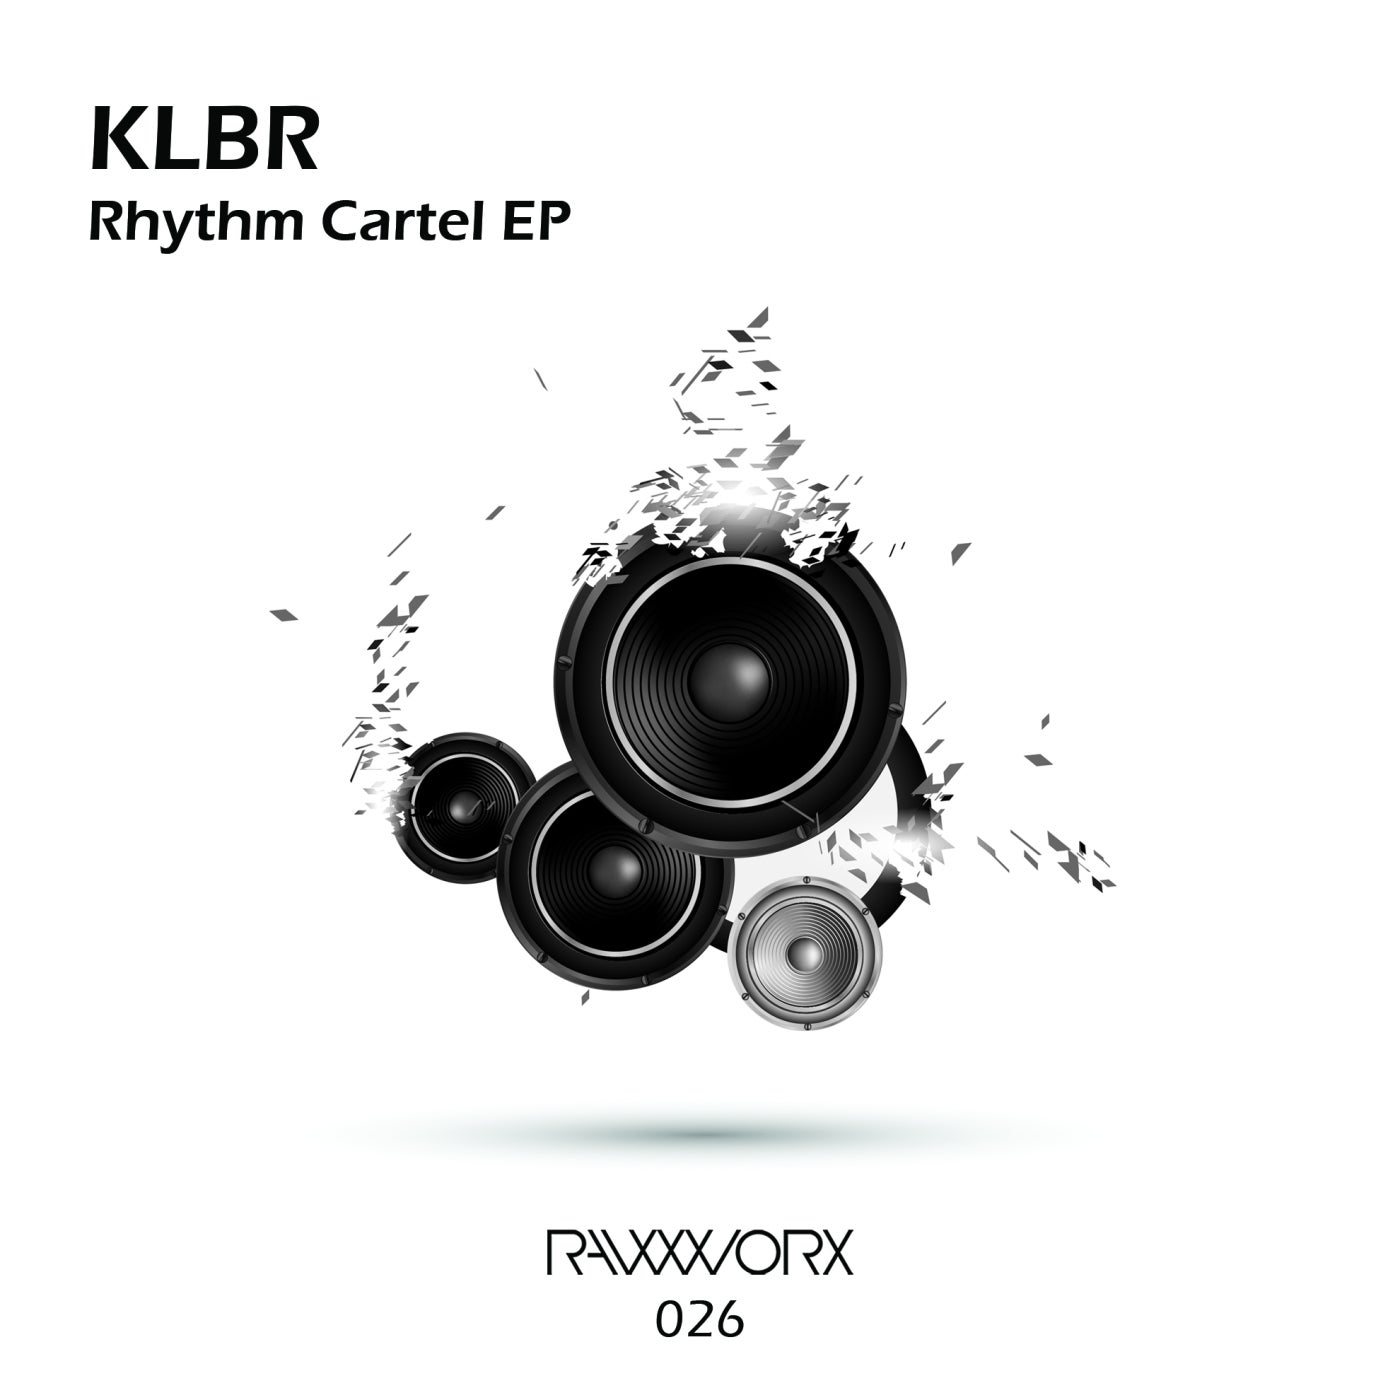 Rhythm Cartel EP